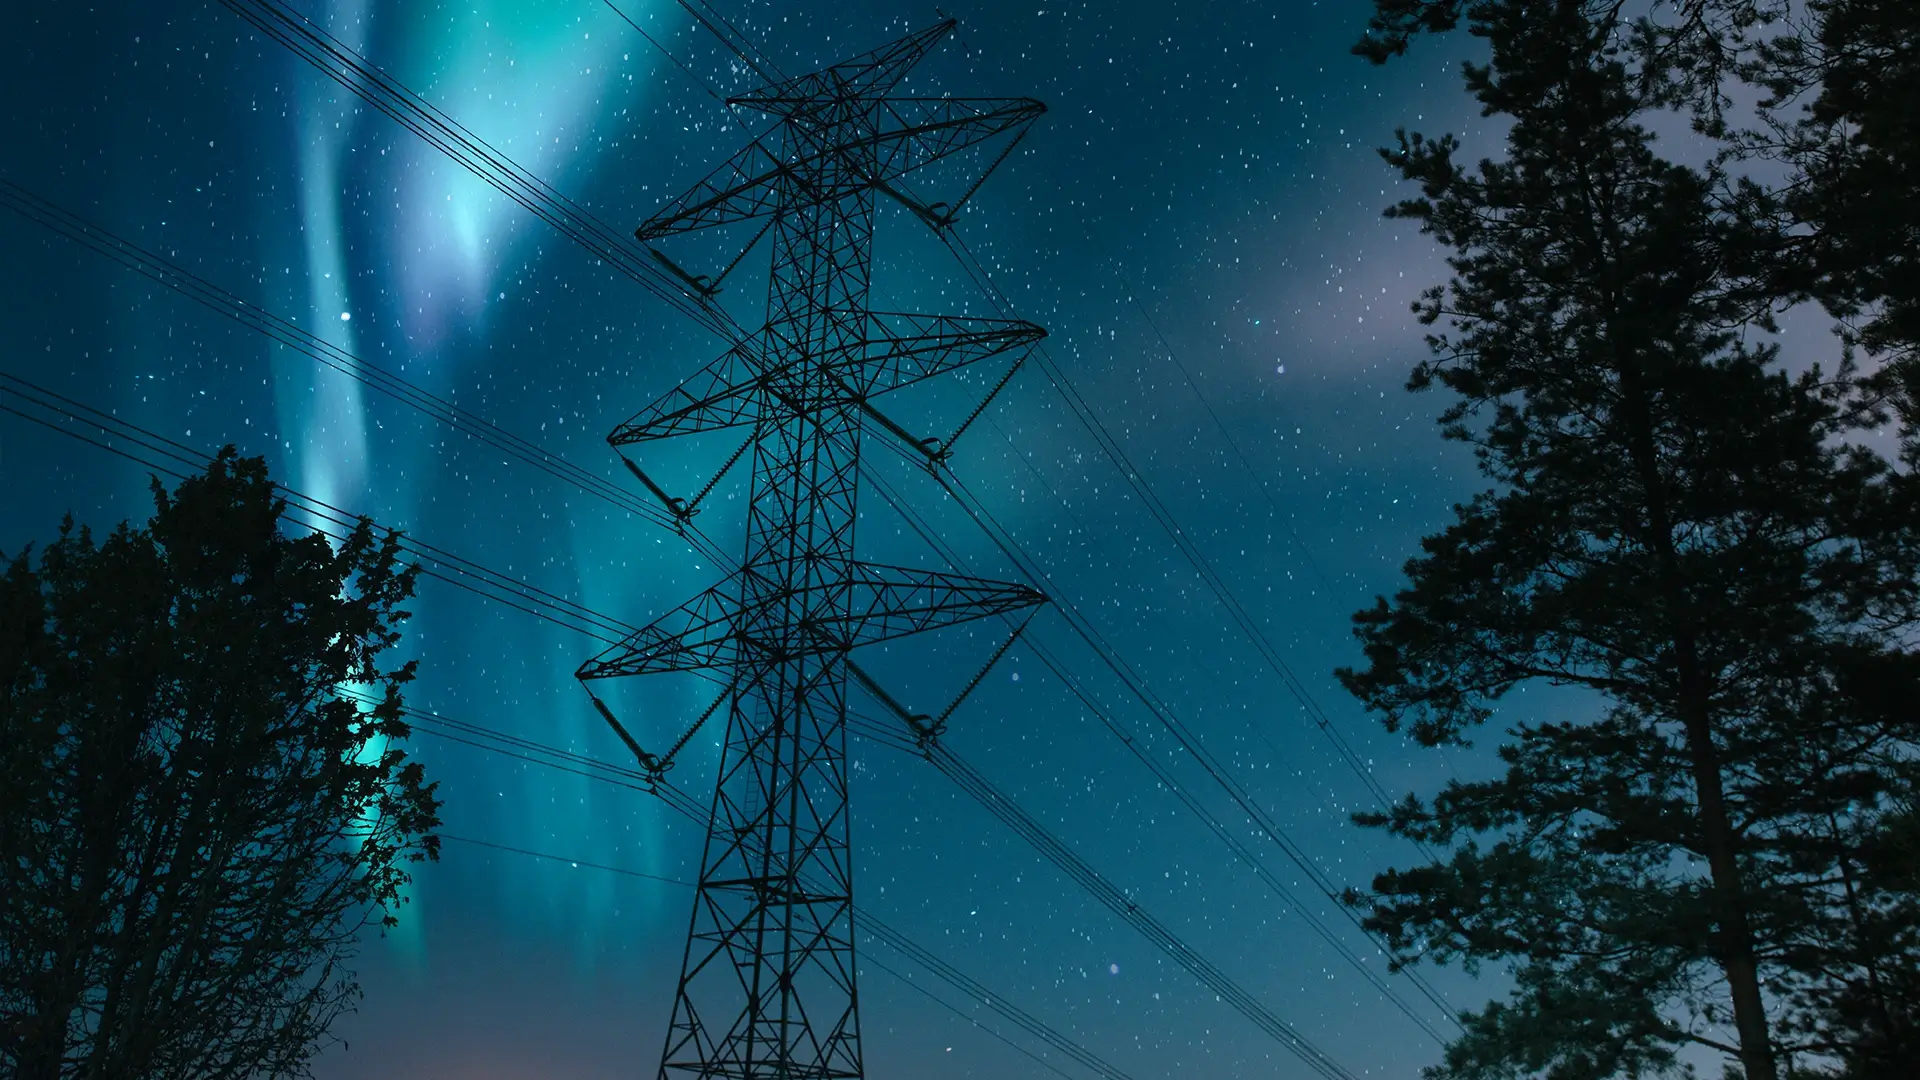 Aurora borealis power lines trees night sky